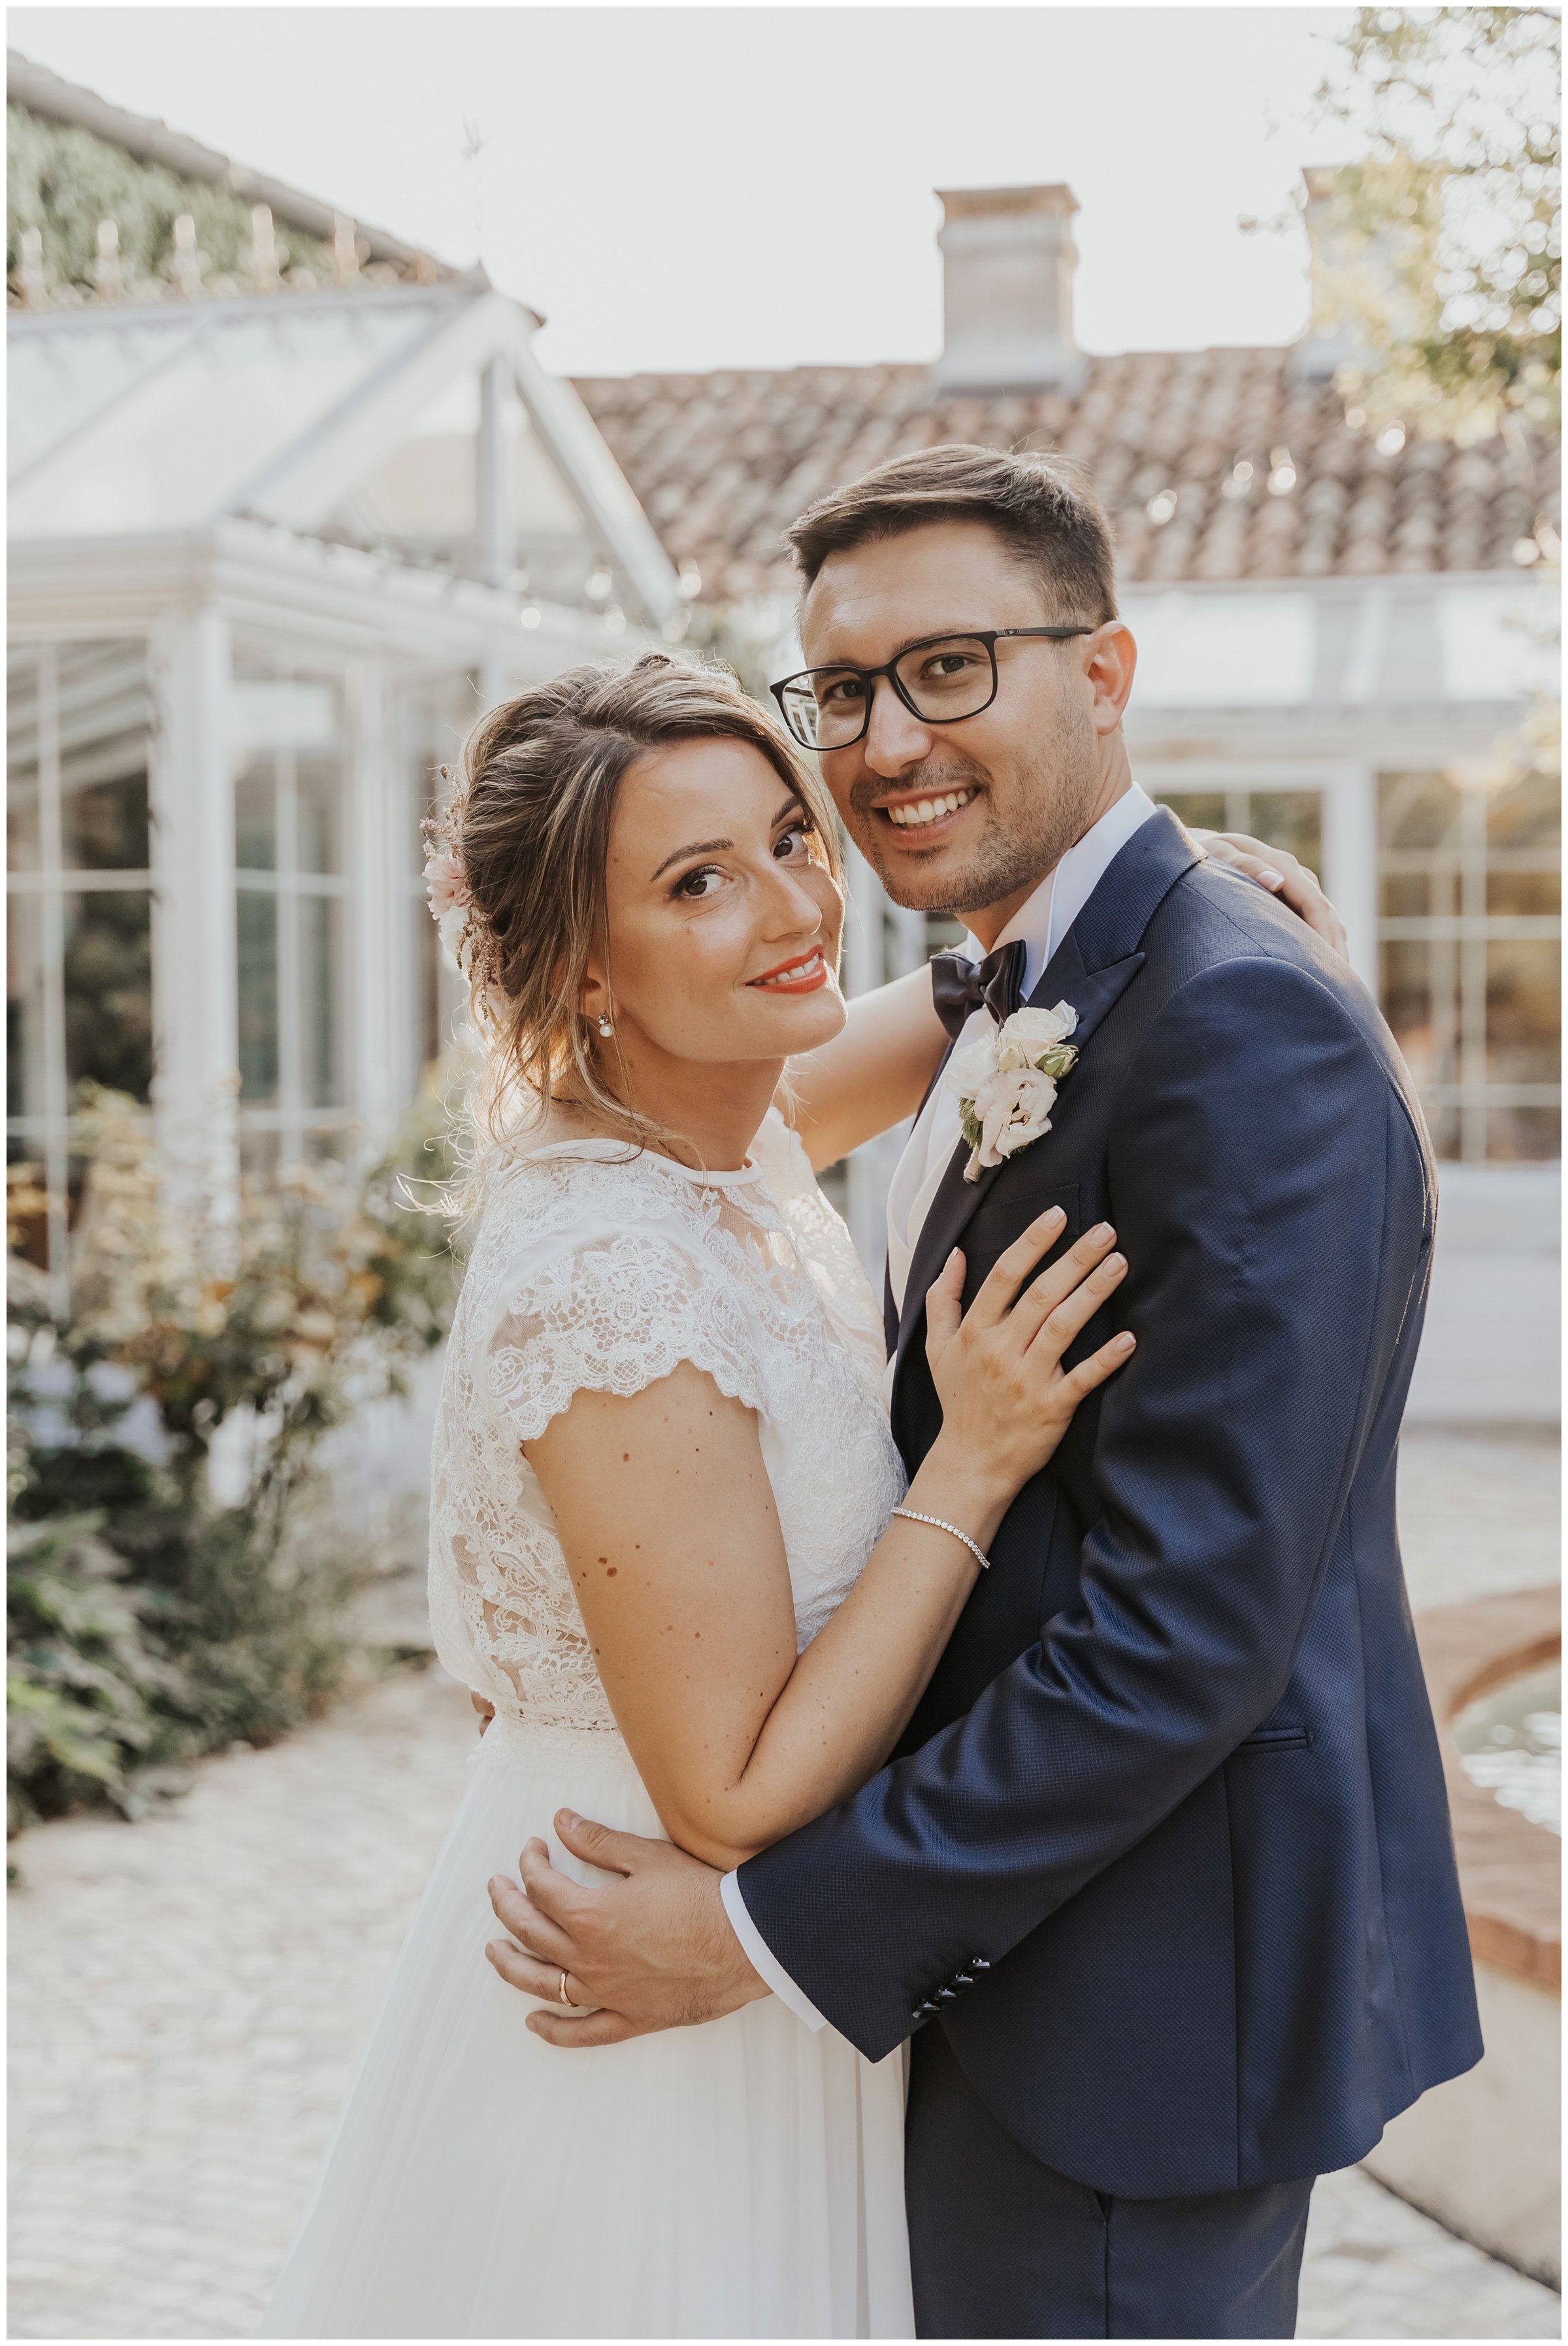 Matrimonio-villa-foscarini-cornaro-fotografo-matrimonio-treviso-fotografo-matrimonio-venezia-39.jpg